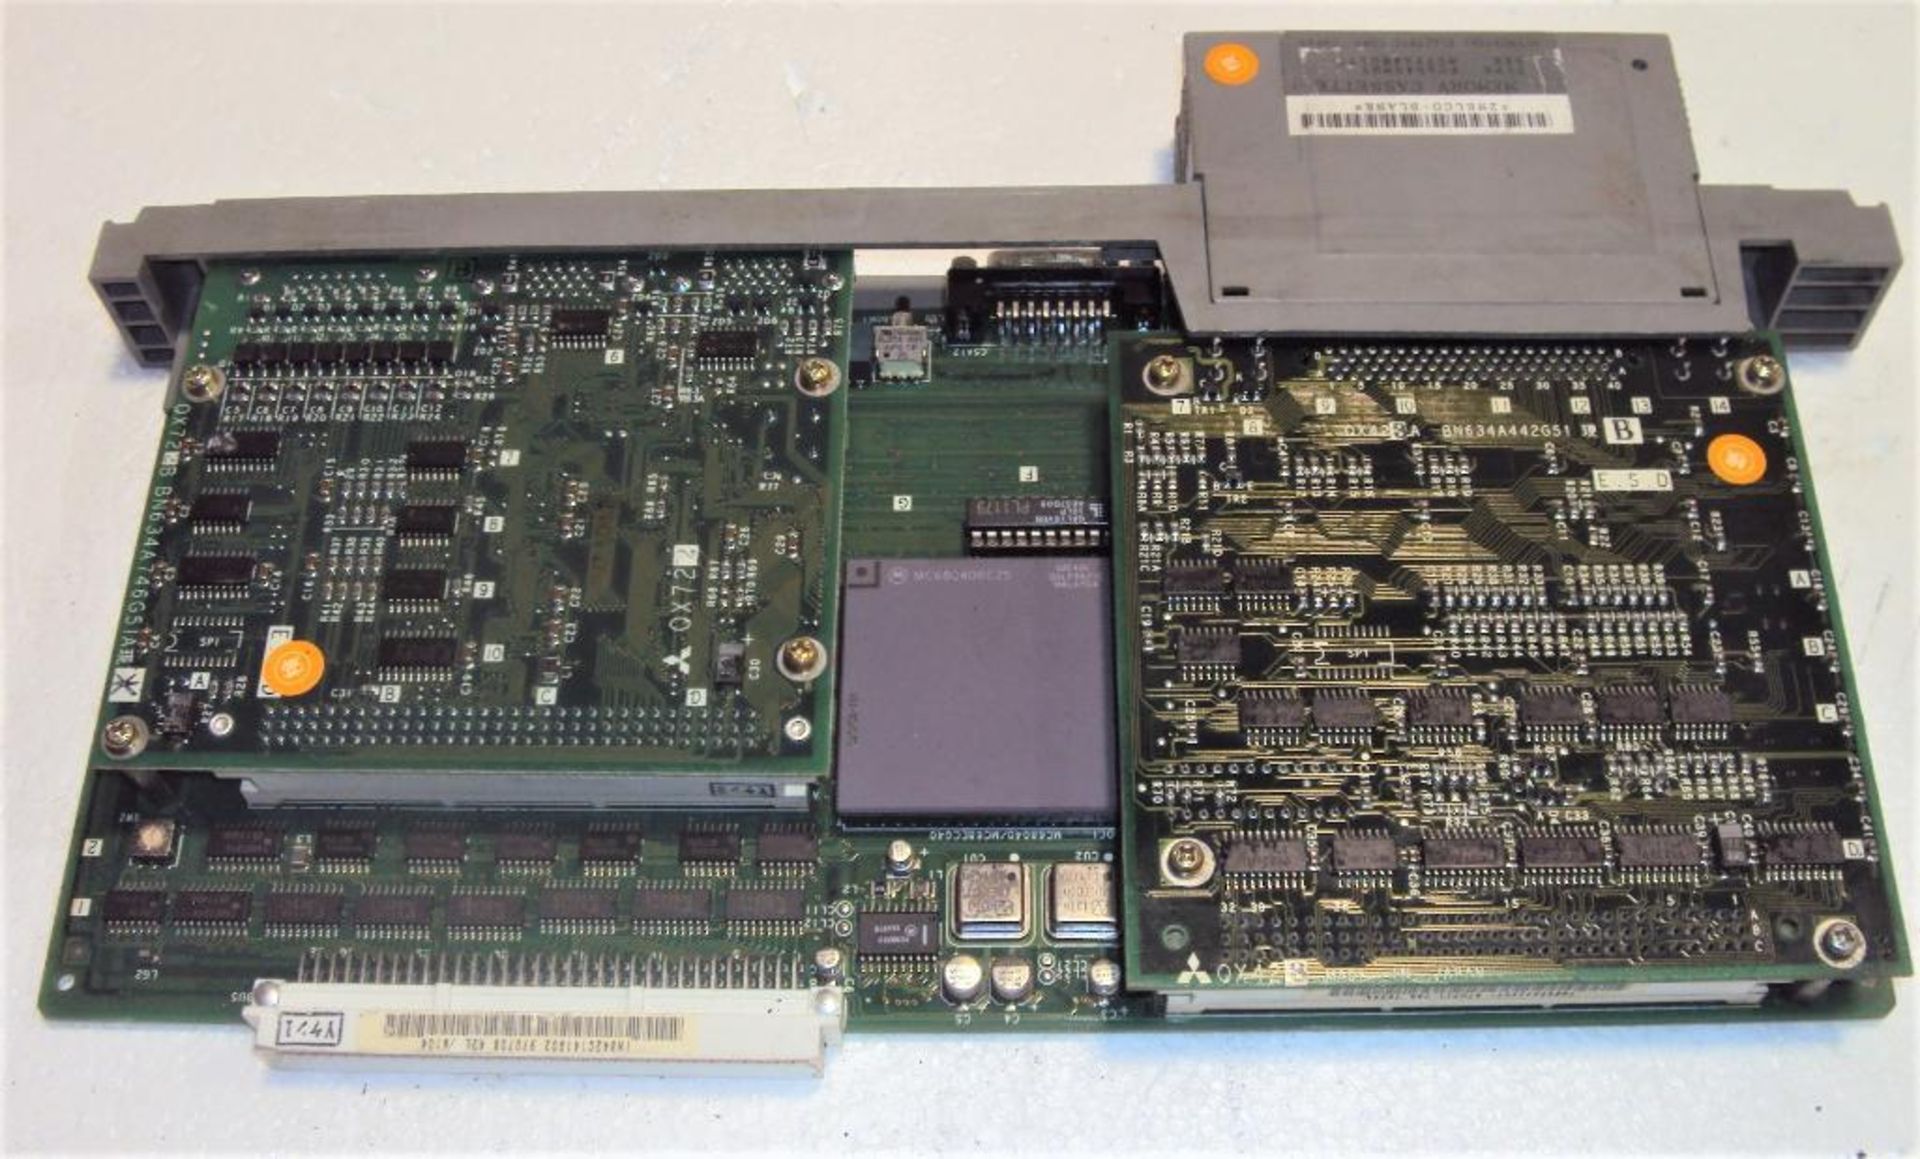 Mitsubishi Mazatrol QX141C BN634A617G52 CPU Module w/ (2) Memory Cassettes QX812 & QX818 and BN634A7 - Image 5 of 7